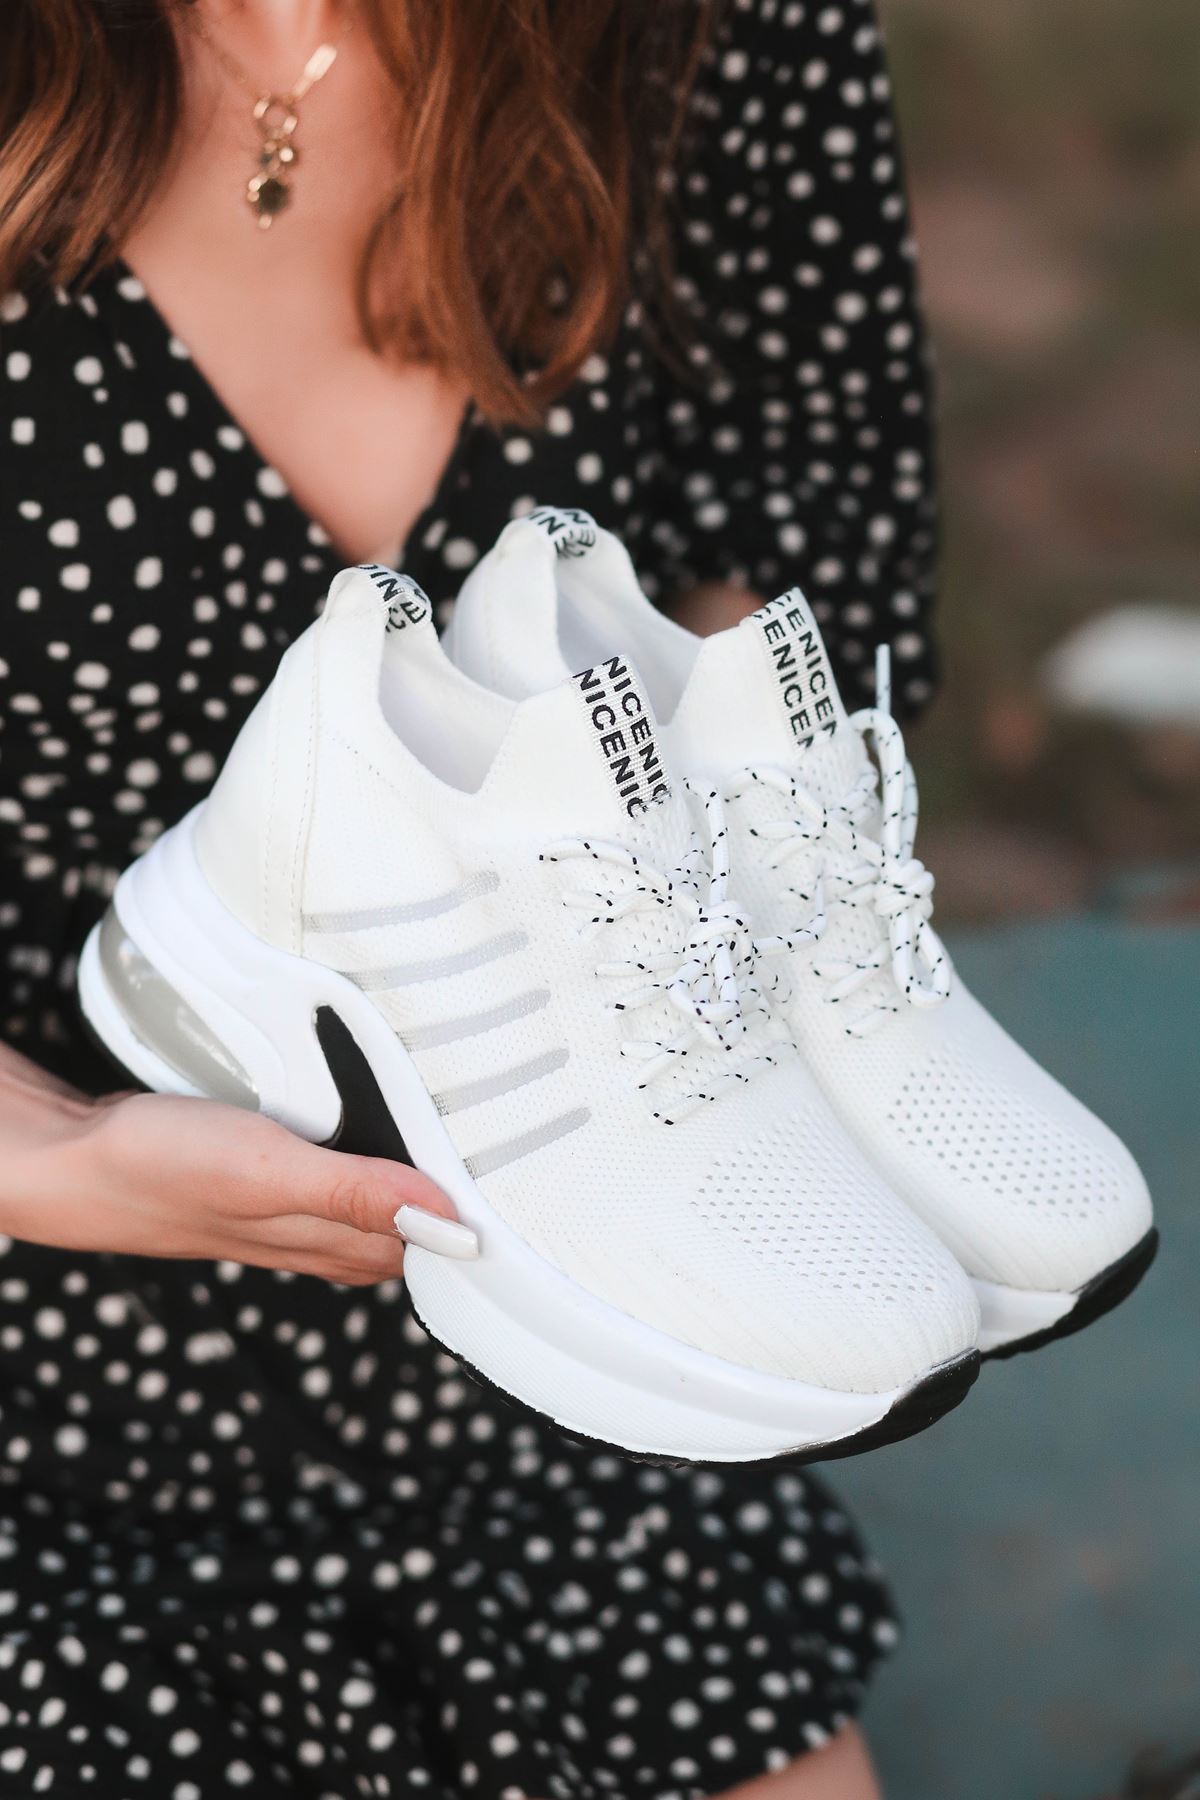 Loli Hava Tabanlı Triko File Detay Beyaz Kadın Spor Ayakkabı